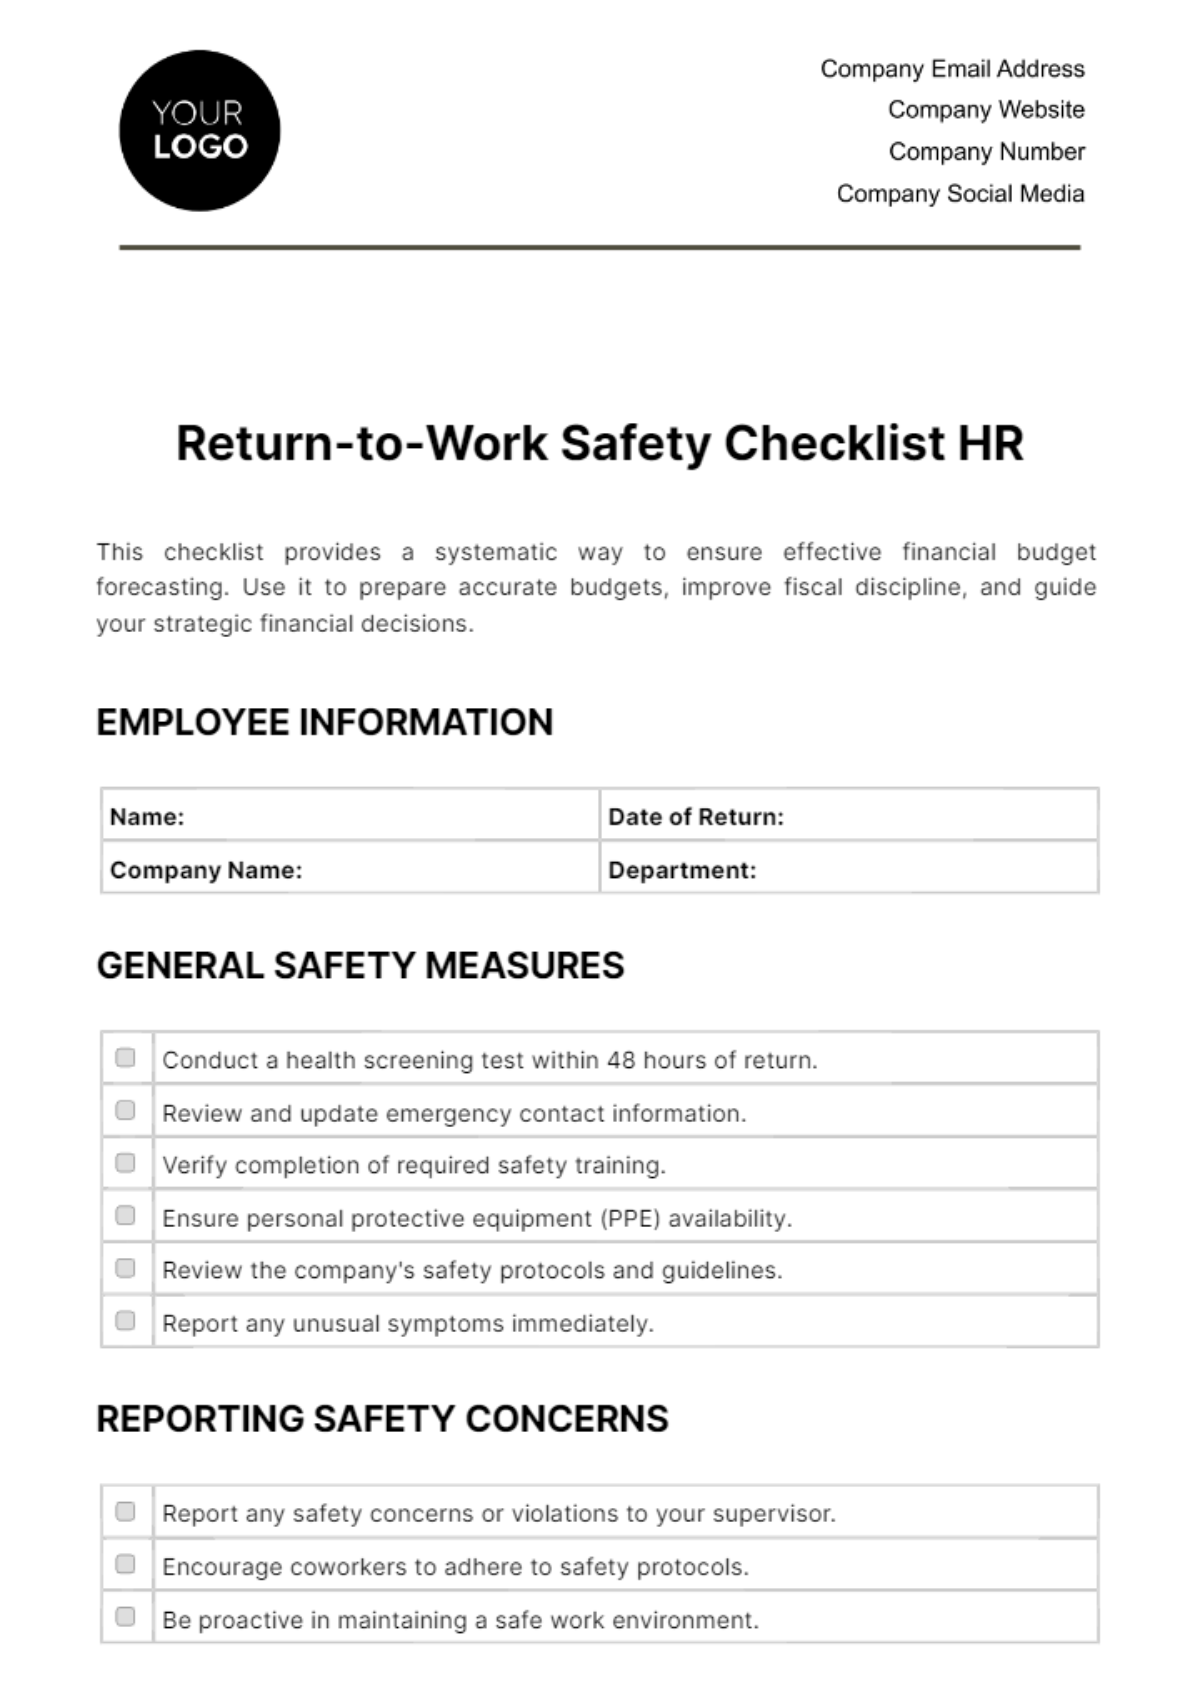 Free Return-to-Work Safety Checklist HR Template